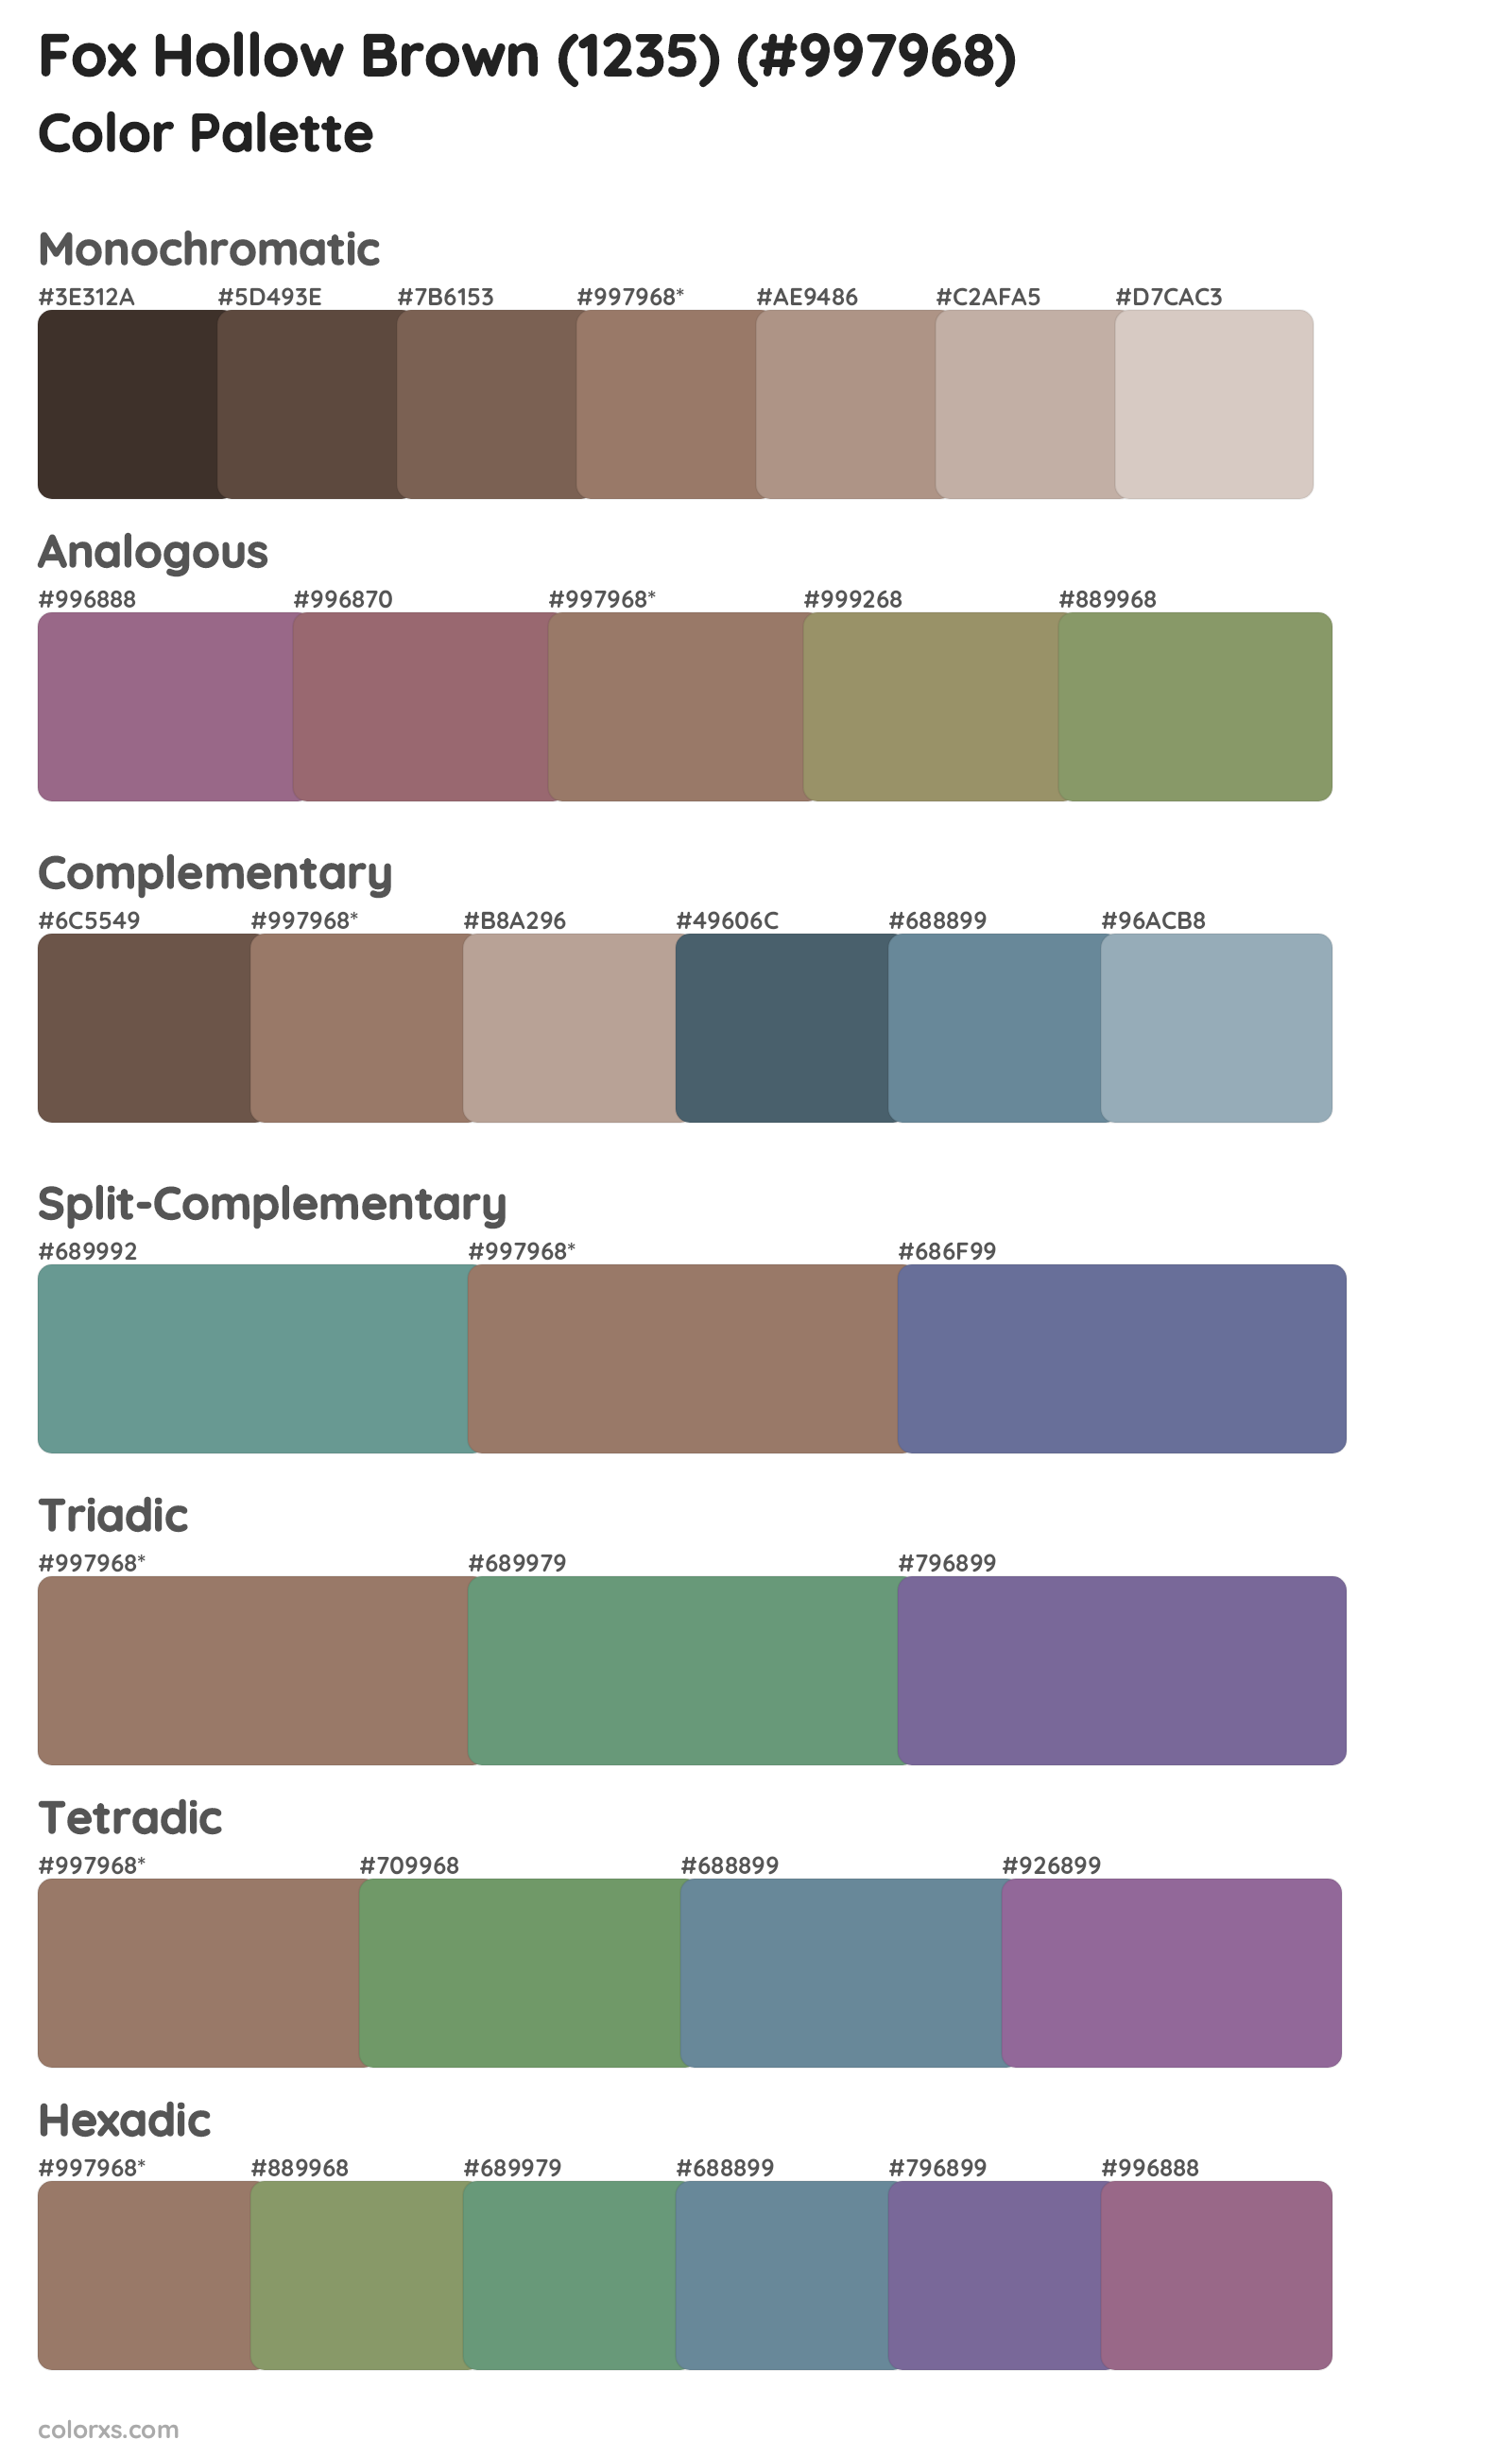 Fox Hollow Brown (1235) Color Scheme Palettes